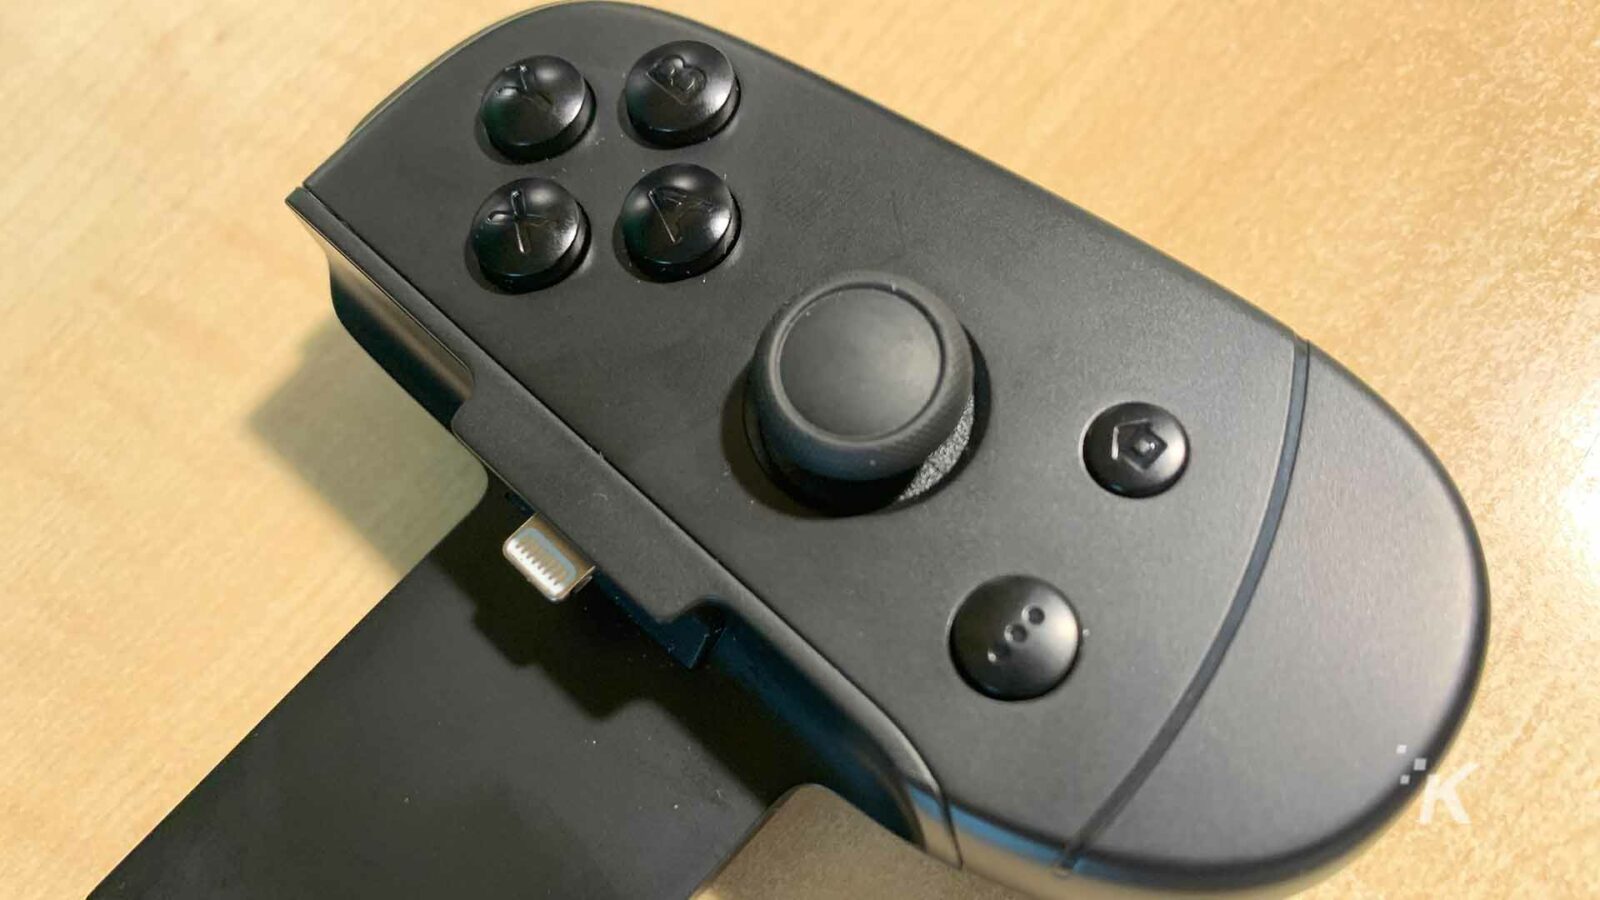 Viene utilizzato il controller per videogiochi nero.